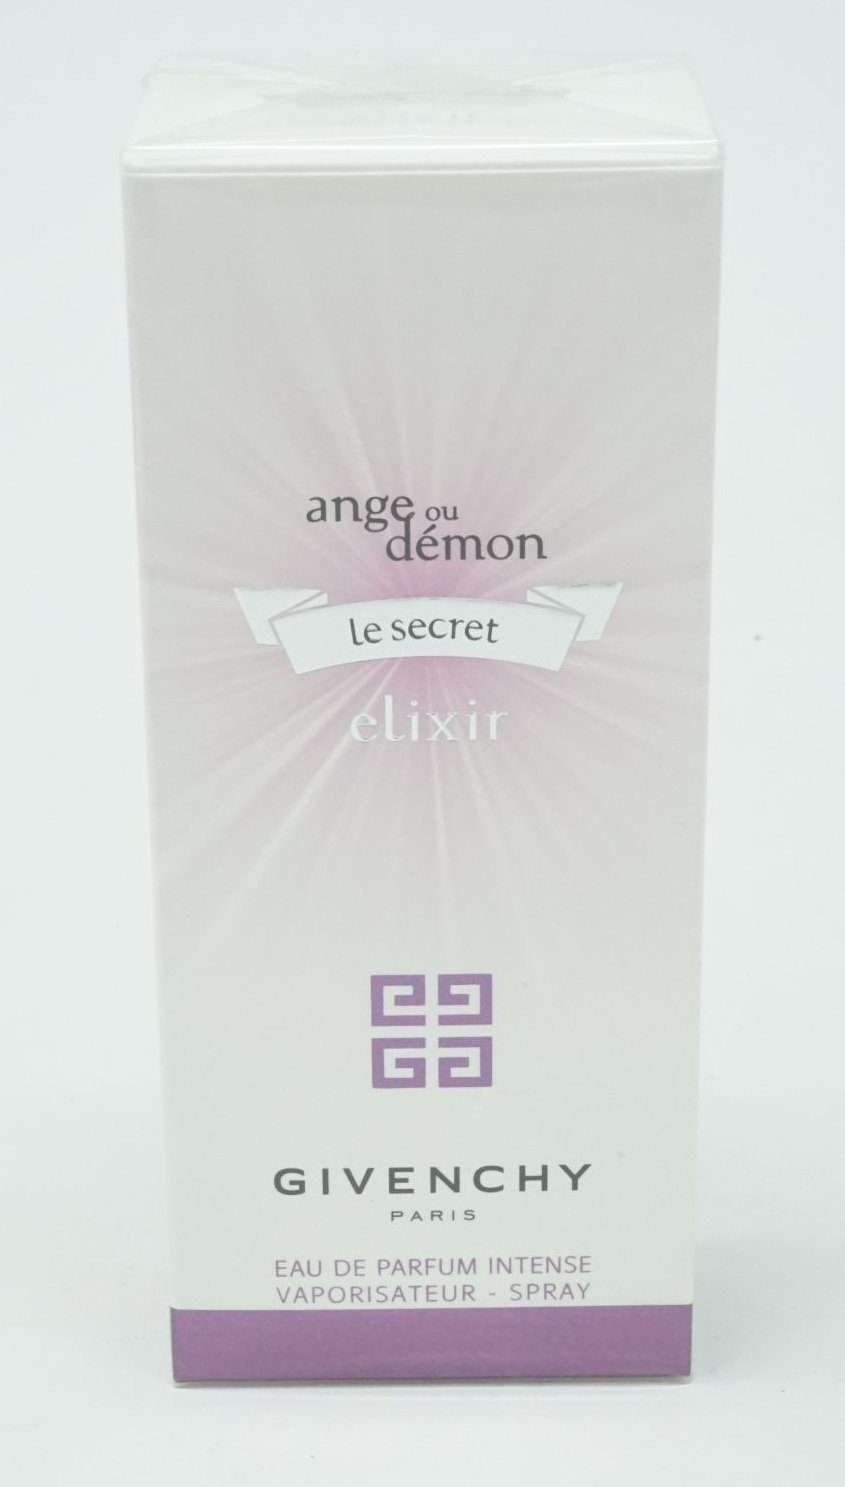 GIVENCHY Eau de Parfum Givenchy Ange ou Demon Le Secret Elixir Intense Eau de Parfum 30ml